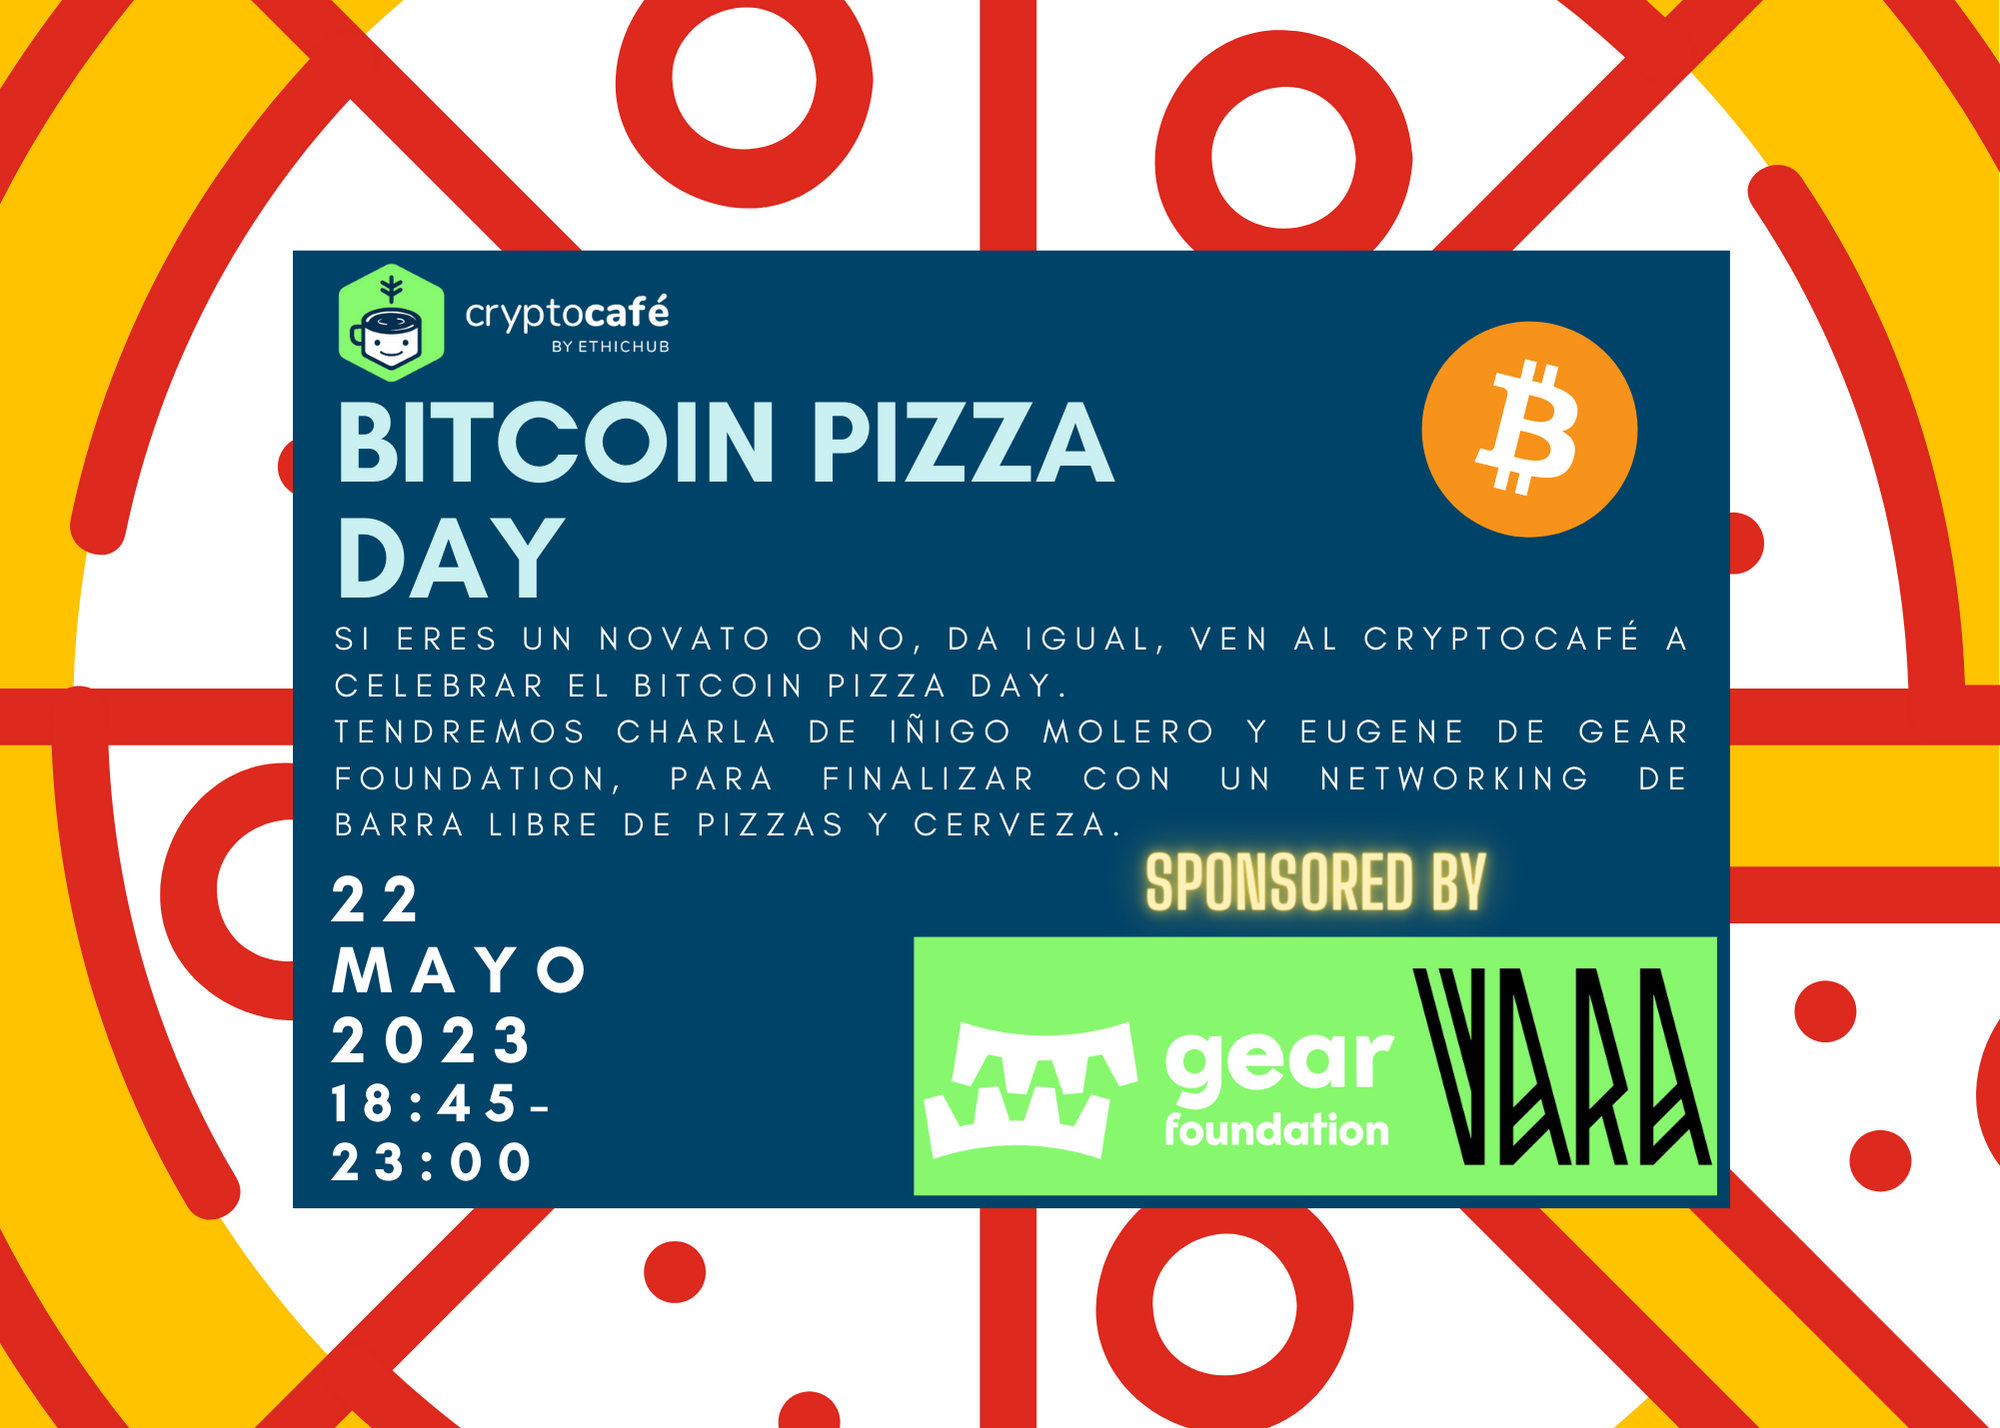 Primera edición del Bitcoin Pizza Day patrocinado por Gear Foundation y Vara